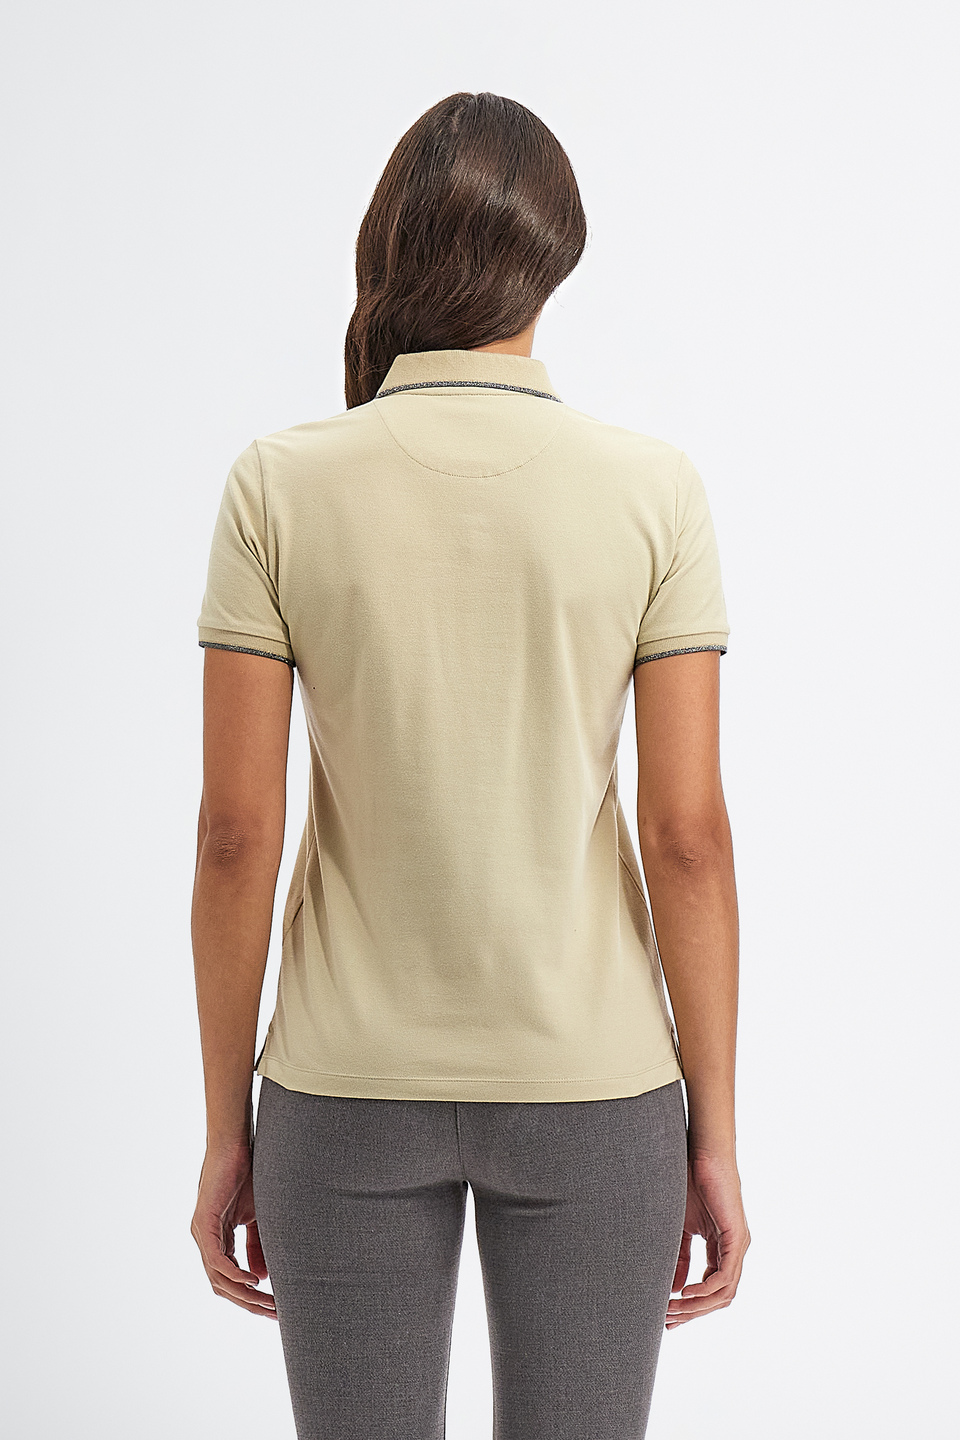 Women’s Timeless polo shirt short-sleeved Piquet-stretch regular fit | La Martina - Official Online Shop